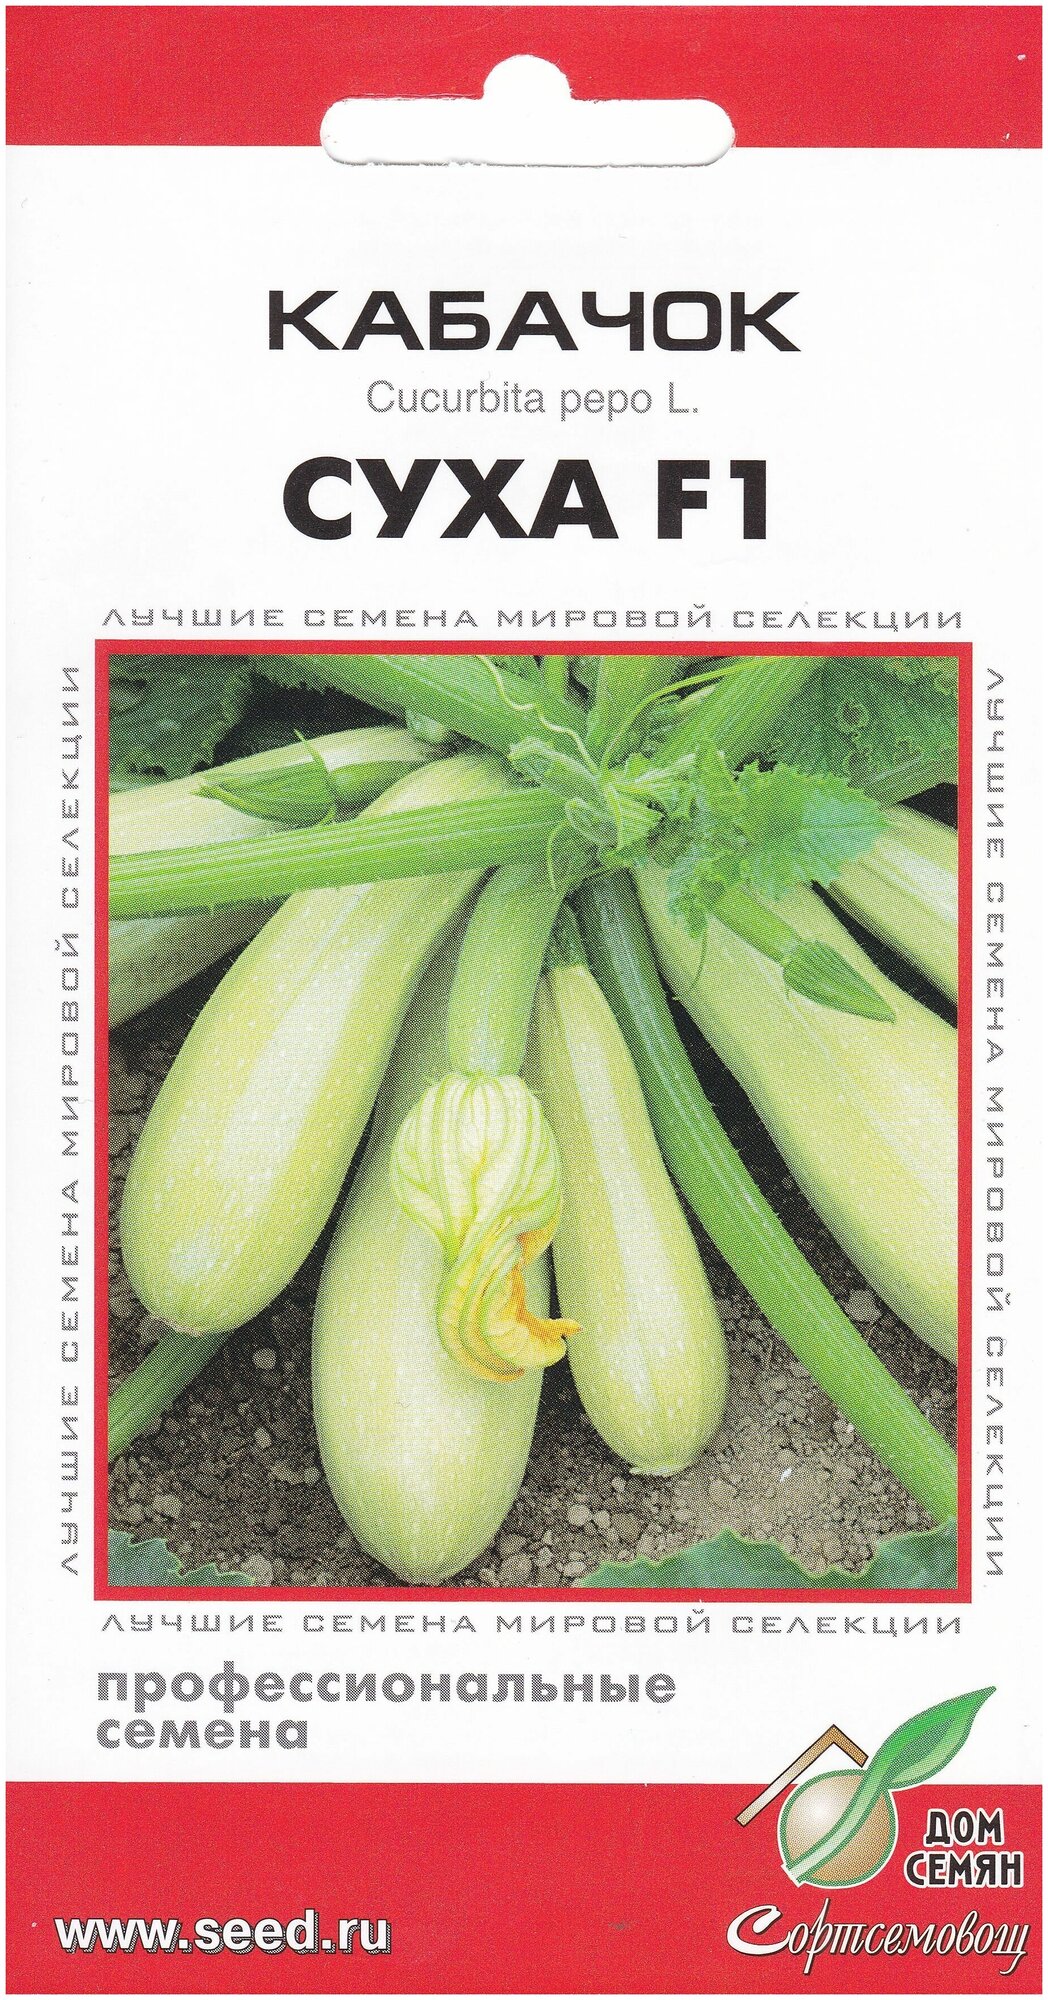 Кабачок Суха F1, 5 семян — купить в интернет-магазине по низкой цене наЯндекс Маркете